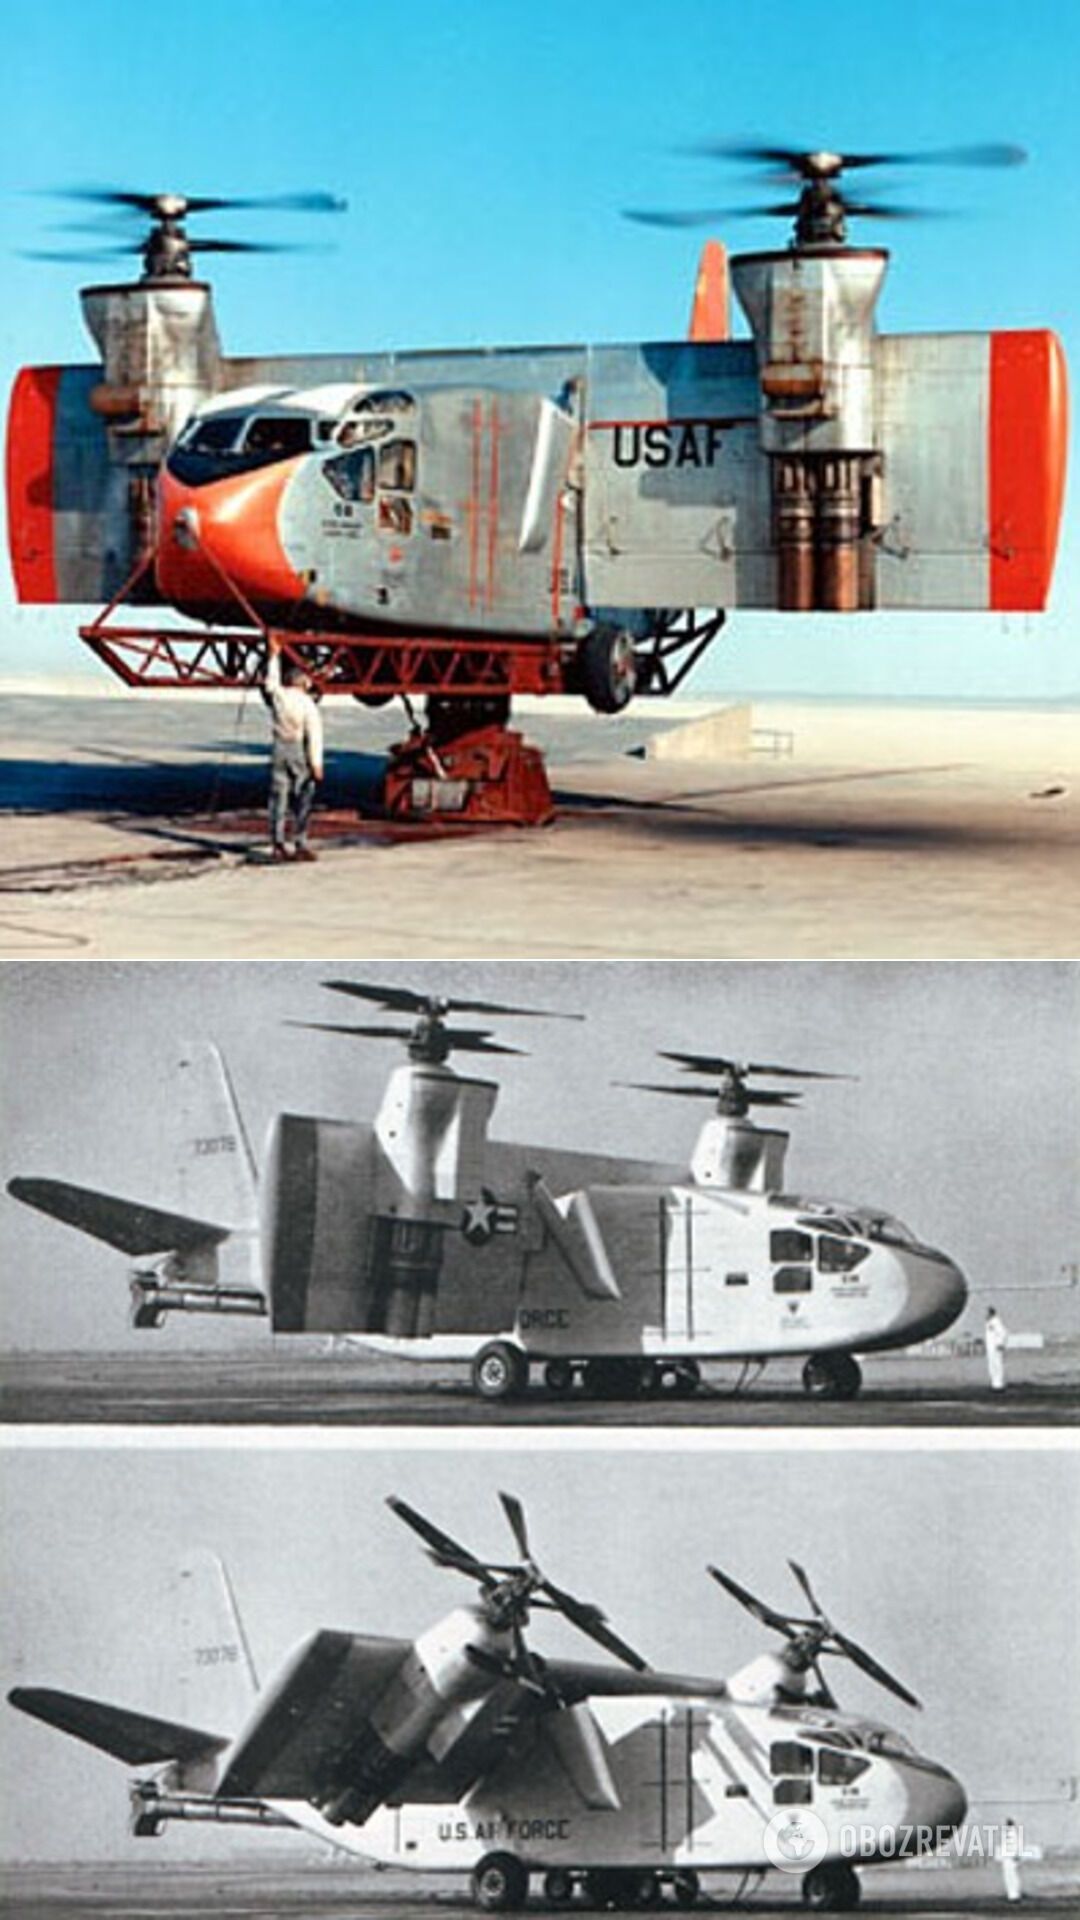 Hiller X-18 – експериментальний вантажний транспортний літак, розроблений у США як перший випробувальний стенд для технології нахилу